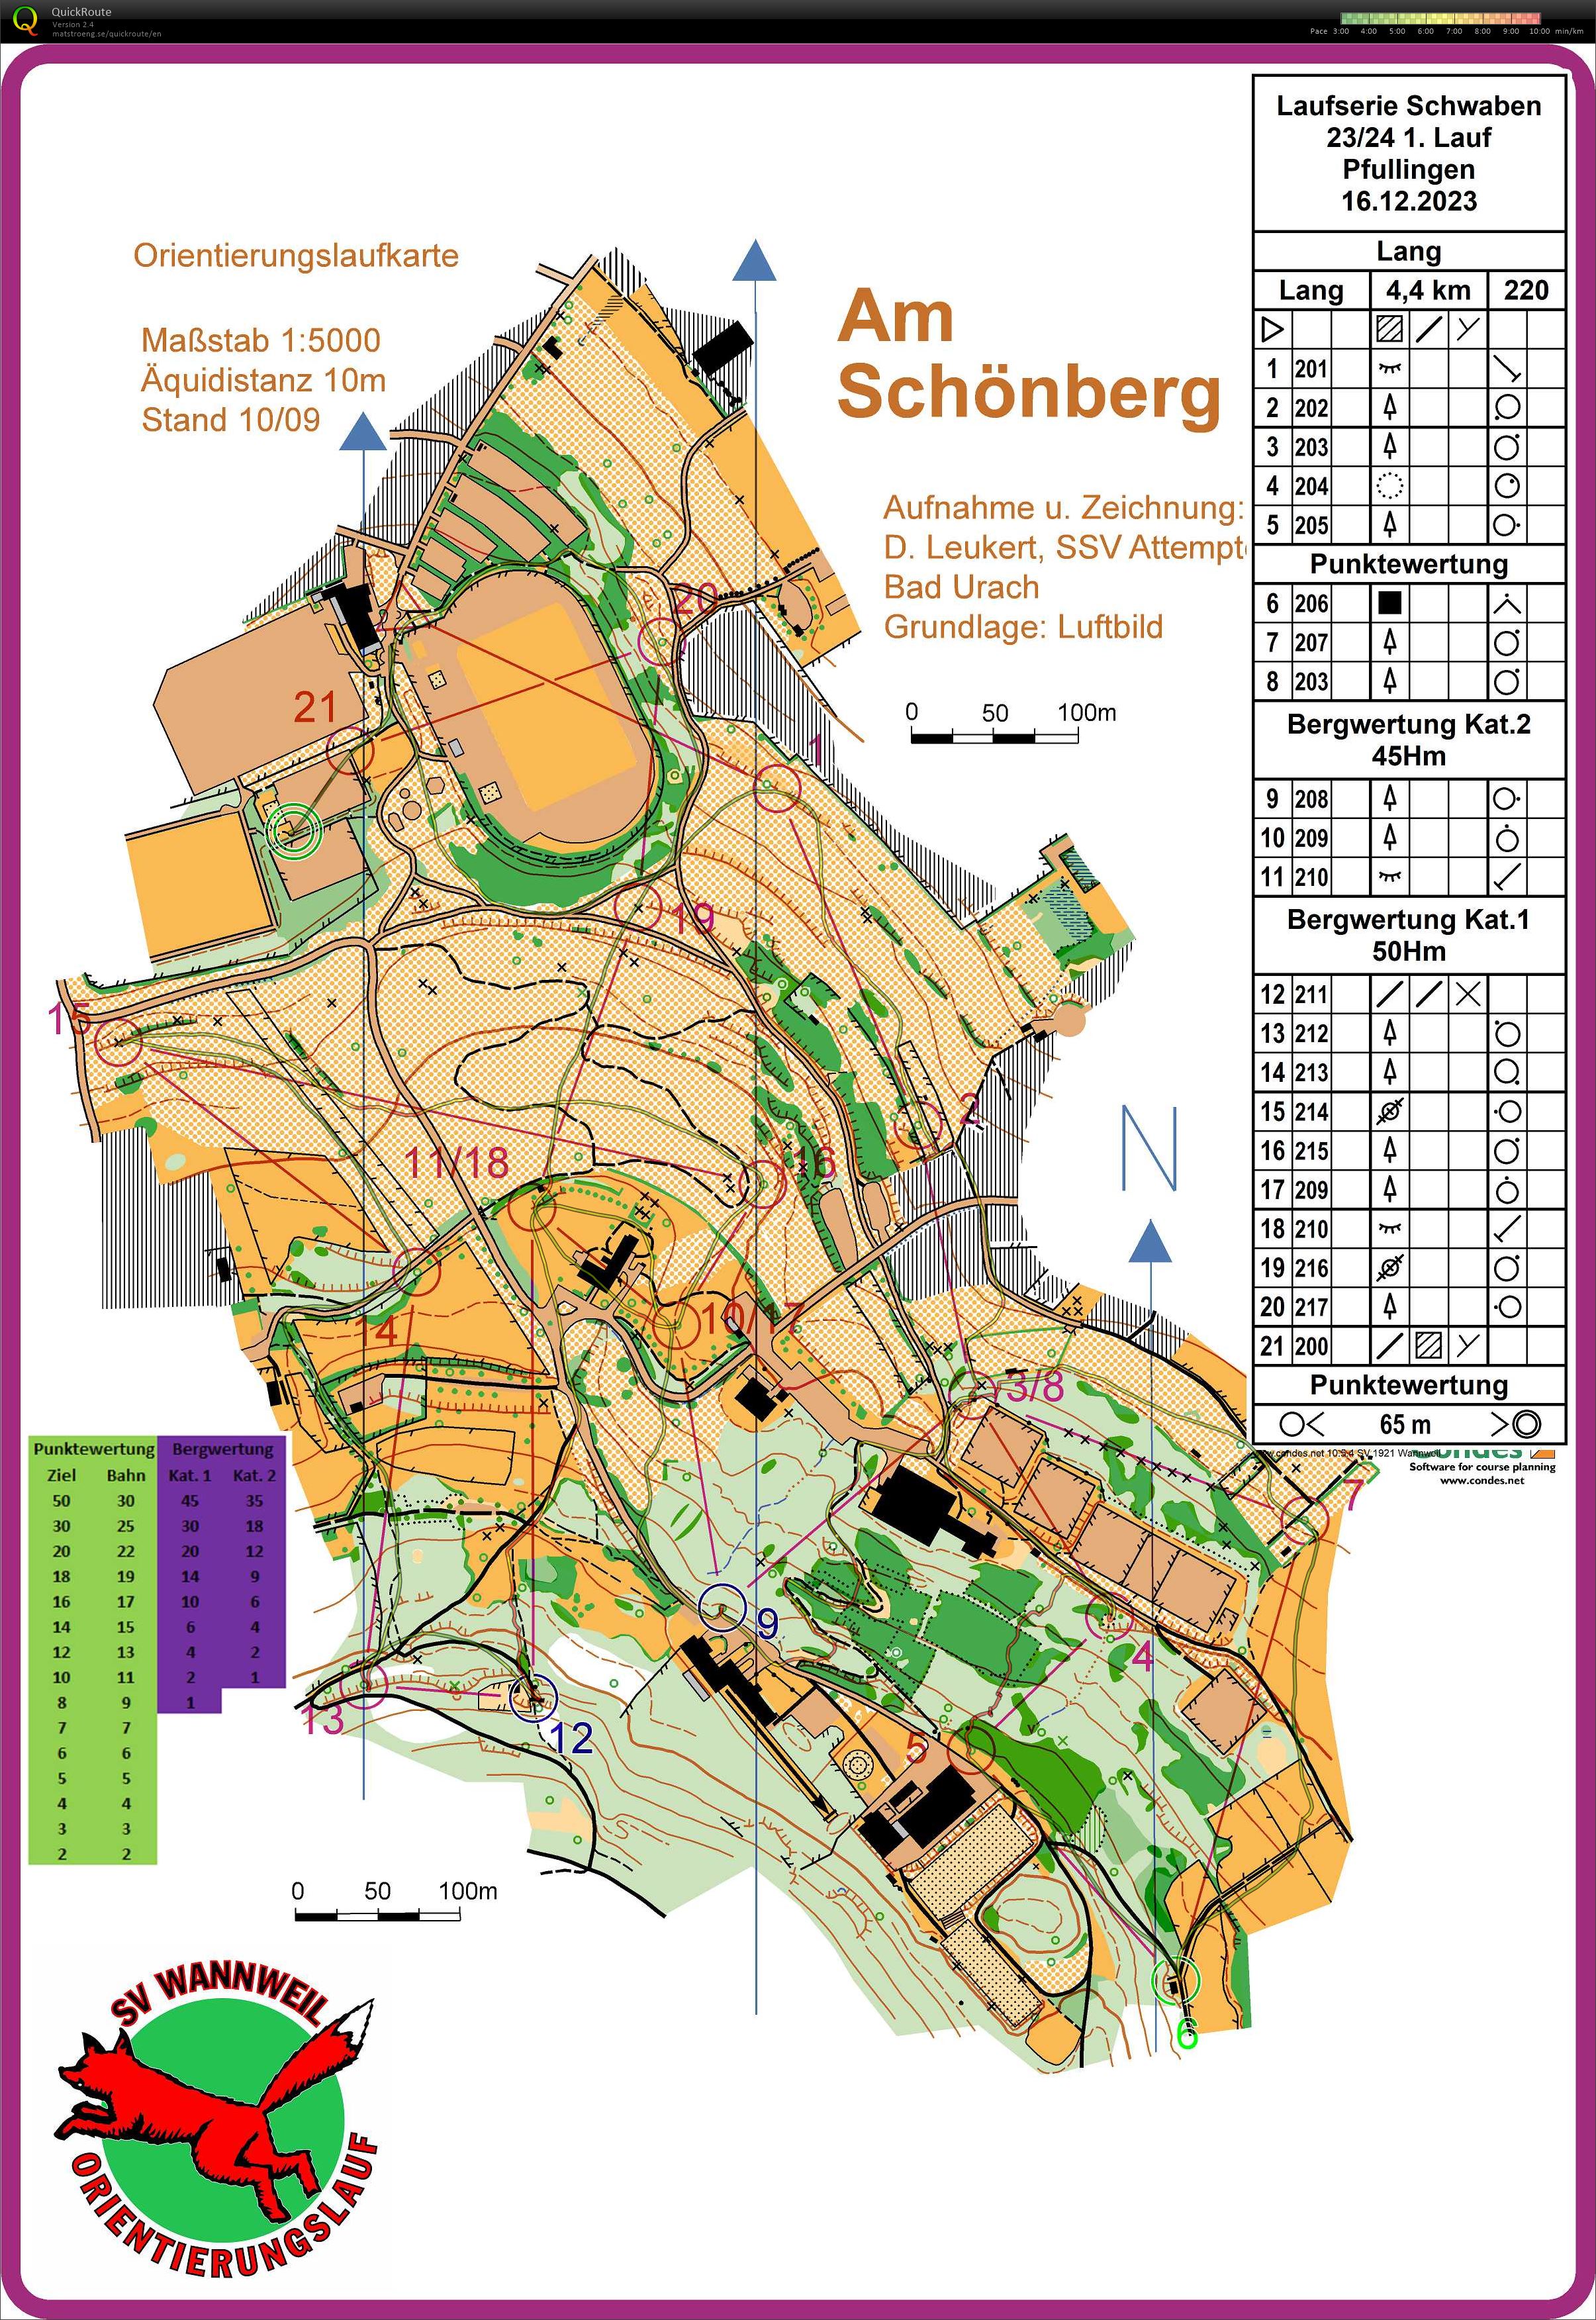 Laufserie Schwaben 23/24 1. Round Pfullingen (16-12-2023)